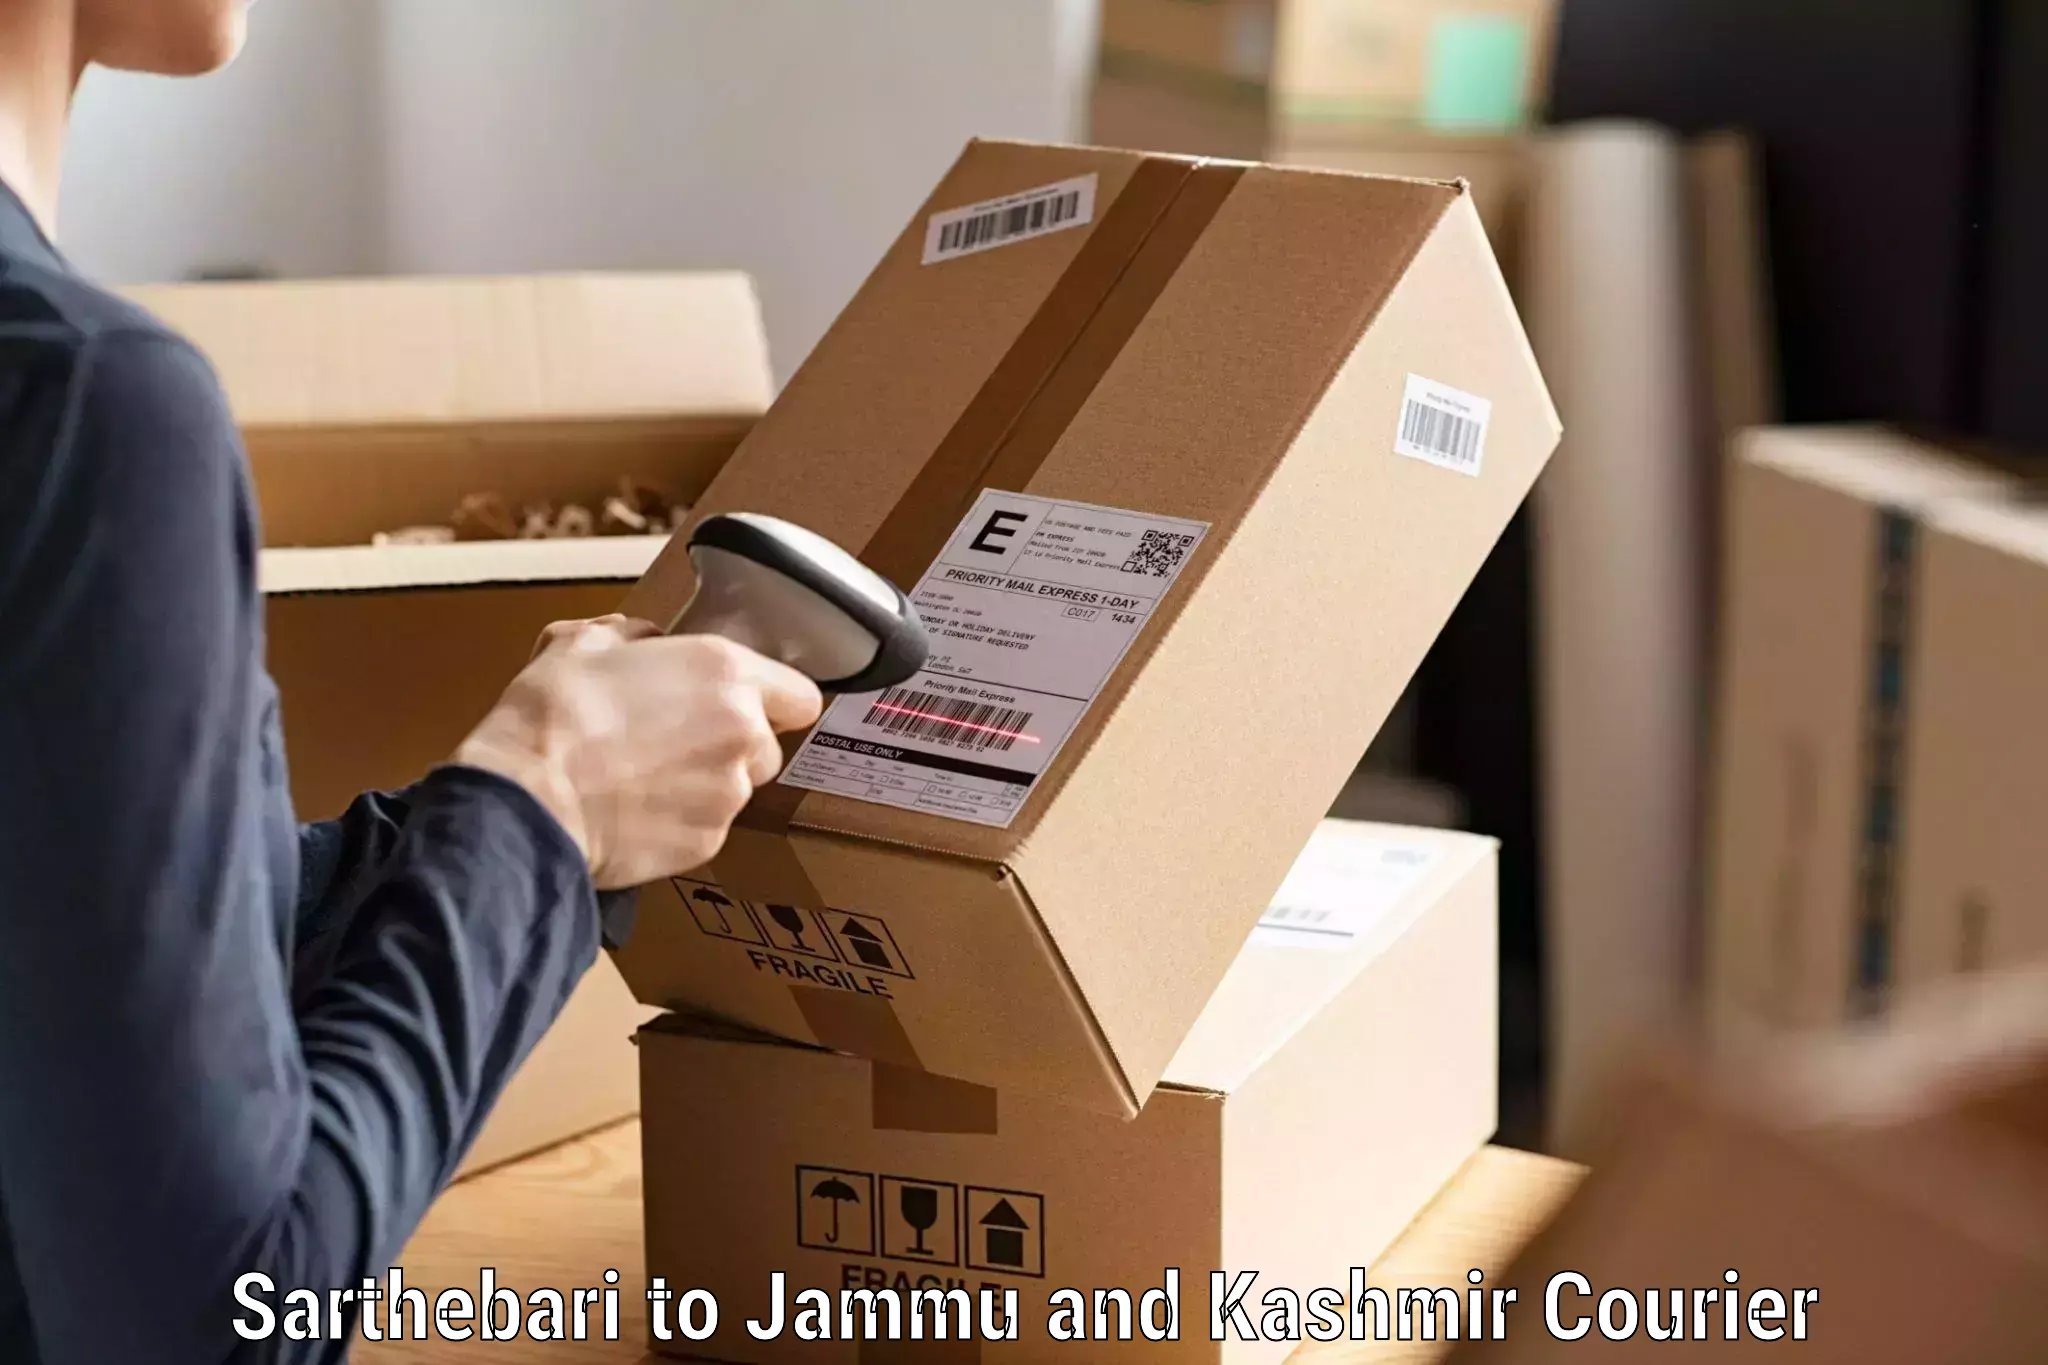 Discount courier rates in Sarthebari to Jammu and Kashmir